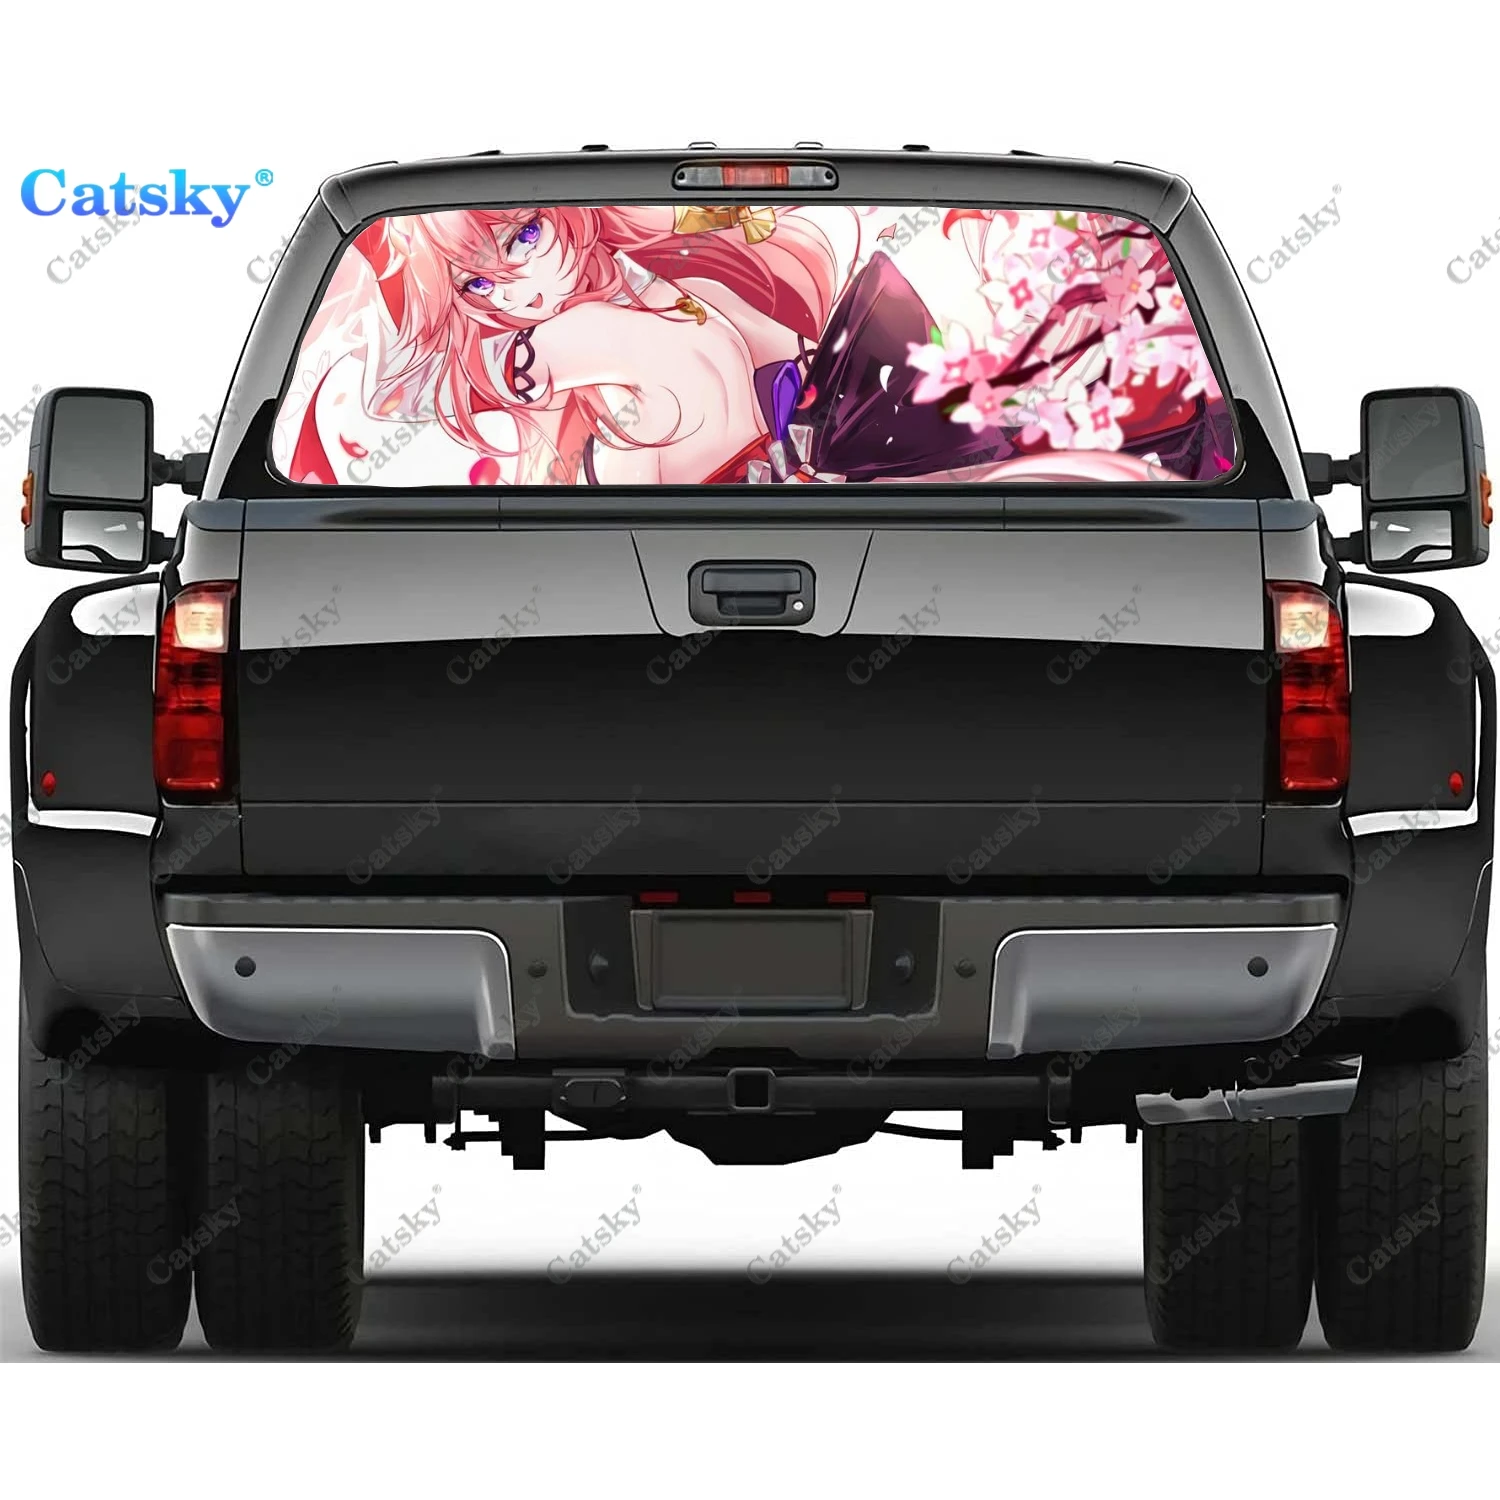 

Genshin Impact anime переводная Наклейка для окна Graphic ПВХ декоративная наклейка для грузовика перфорированная виниловая универсальная наклейка